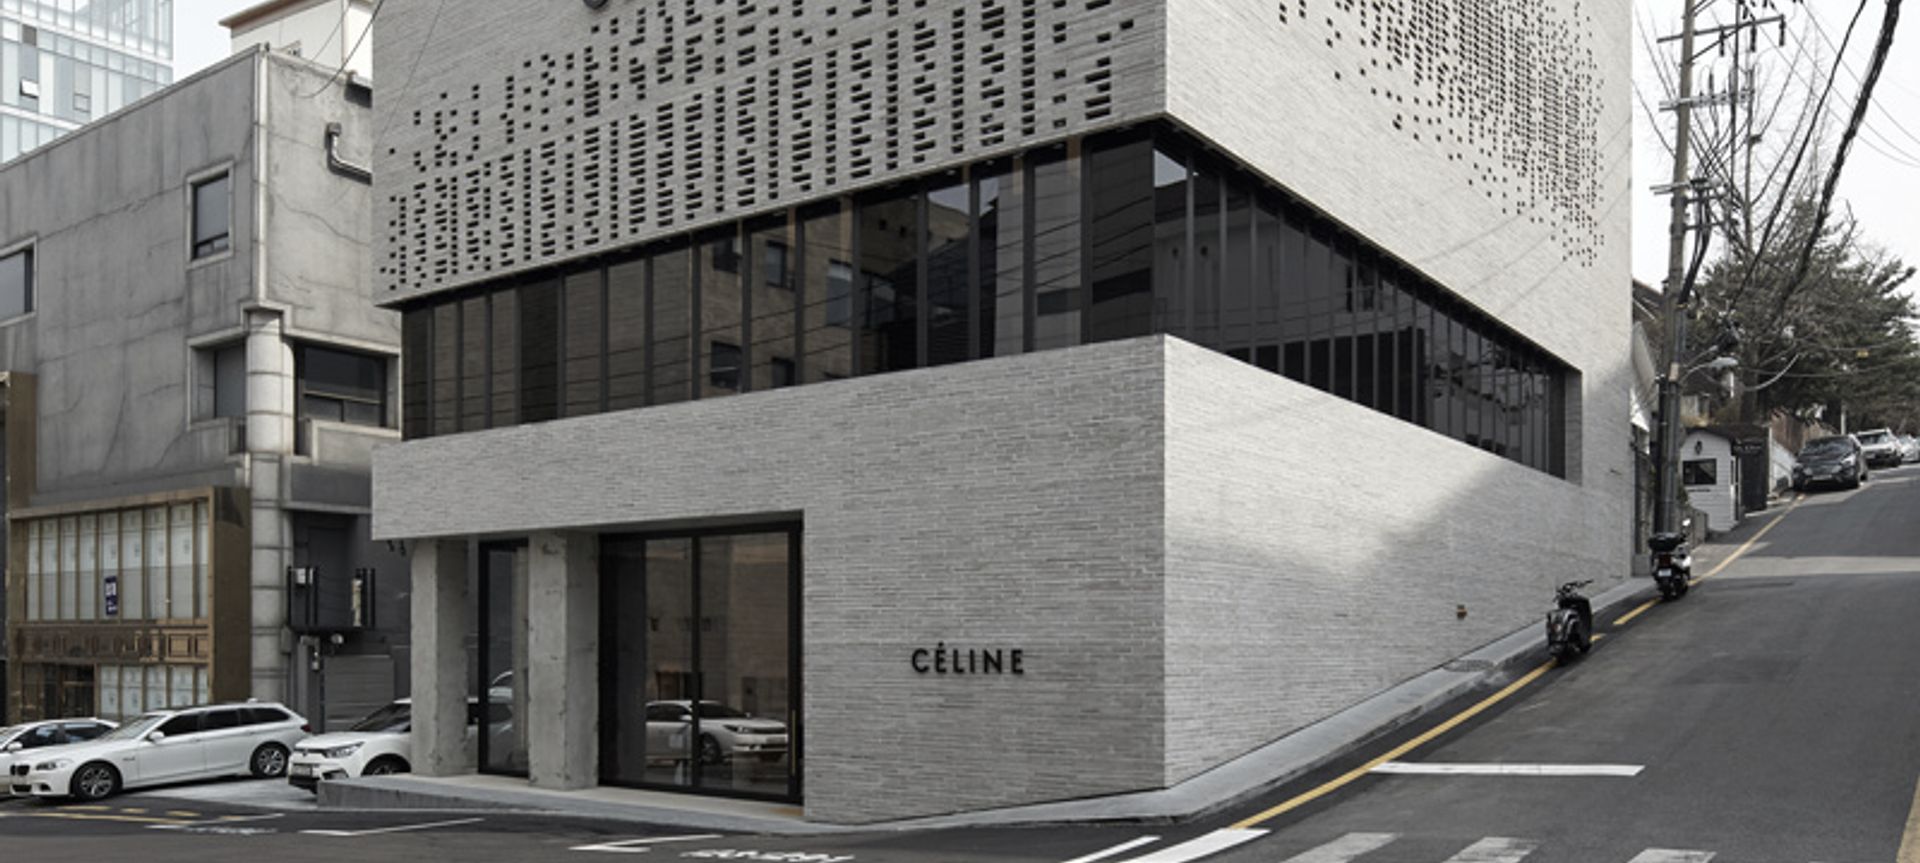 Celine Building banner